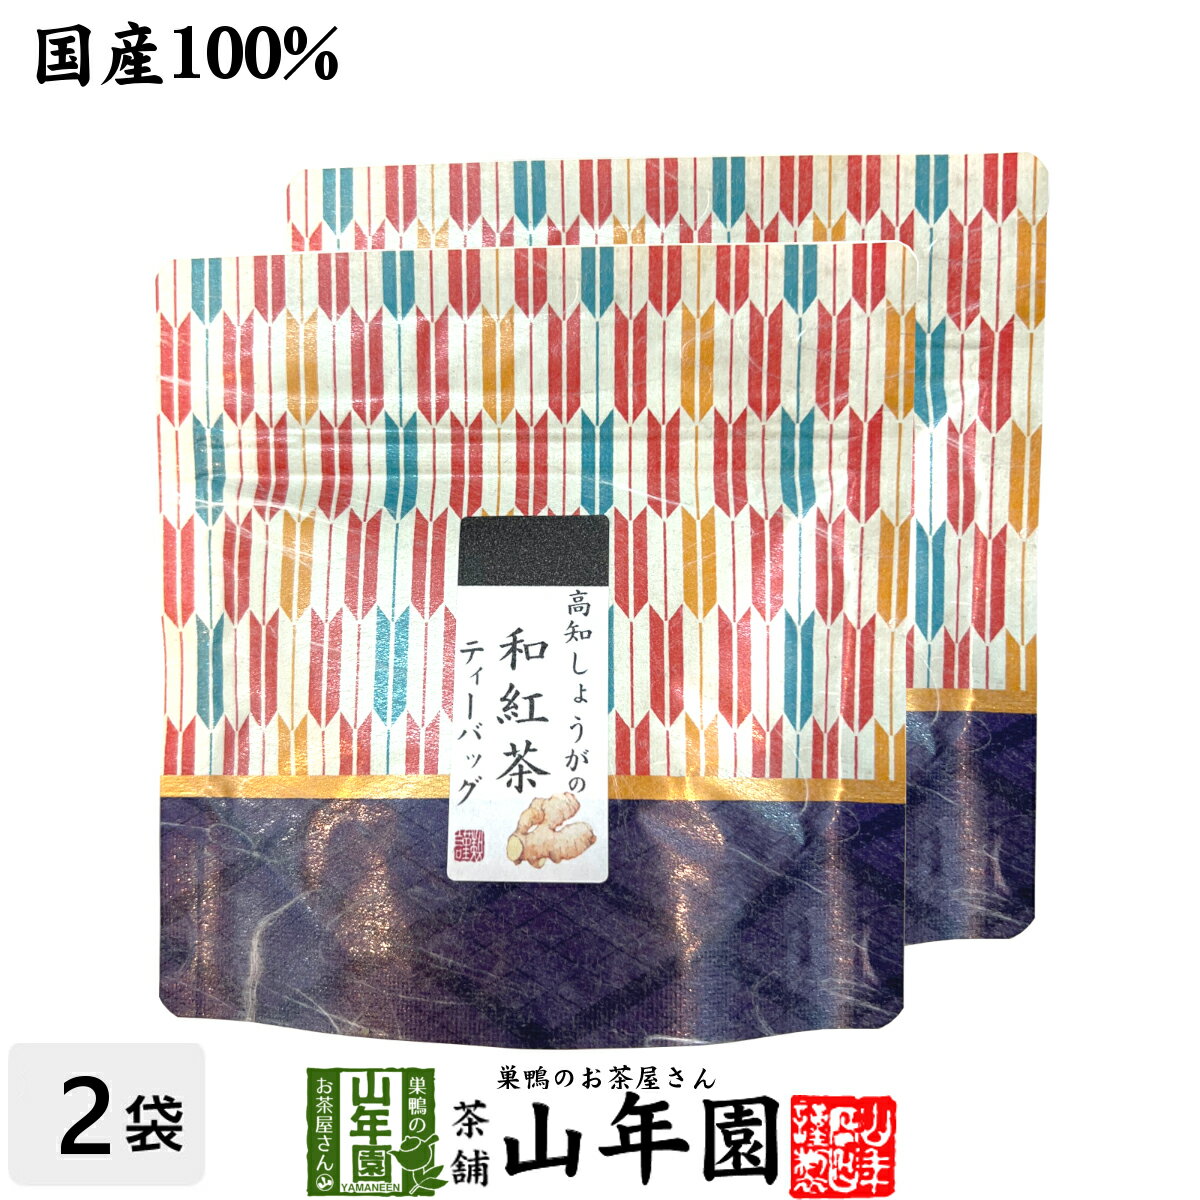 【国産100%】高知しょうがの和紅茶 2g×5パック×2袋セット送料無料 静岡県産紅茶 高知県産しょうが 国産 生姜 日本茶 …